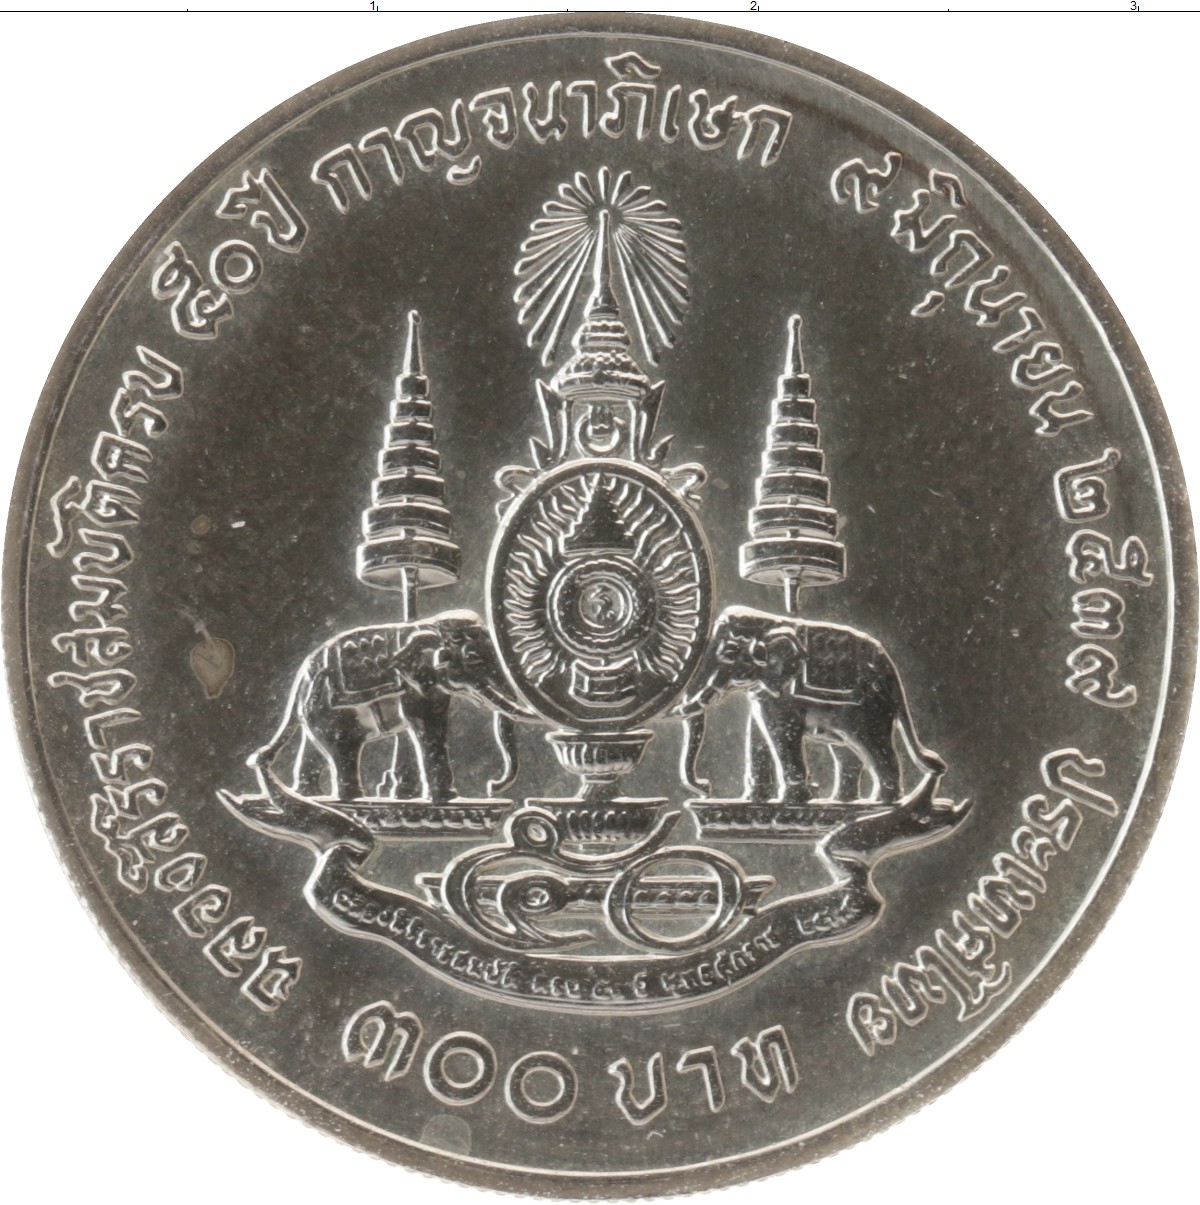 600 бат. Таиланд 25 сатанг 1996. Монета 25 бат Таиланд. 50 Сатангов Таиланд 1996. Таиланд 25 сатанг UNC.